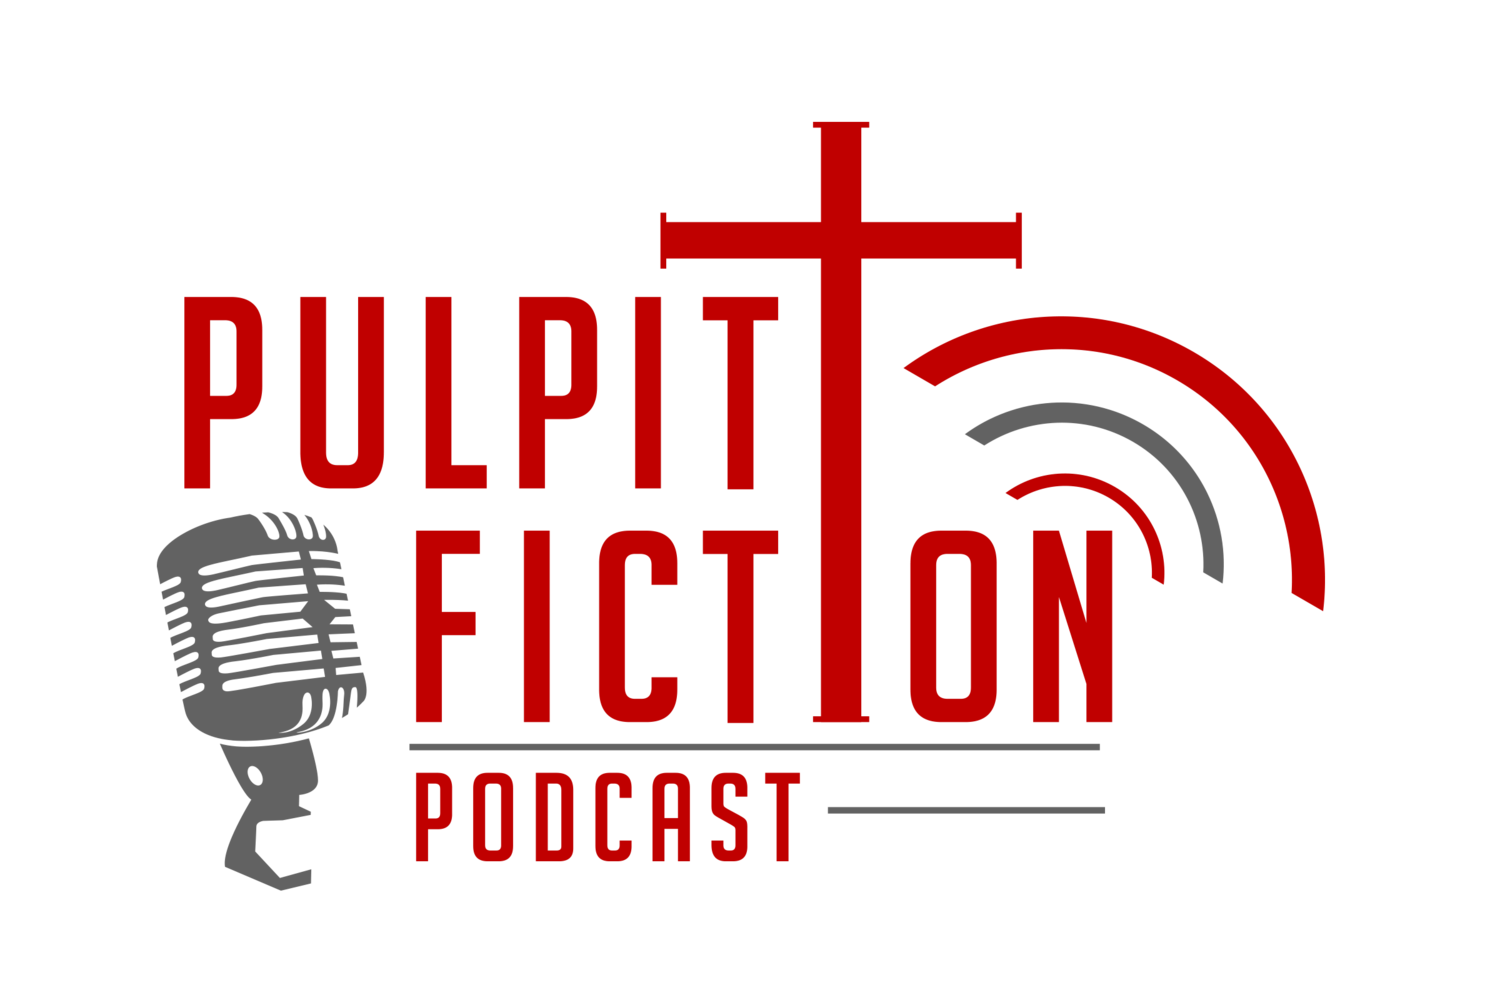 Pulpit Fiction